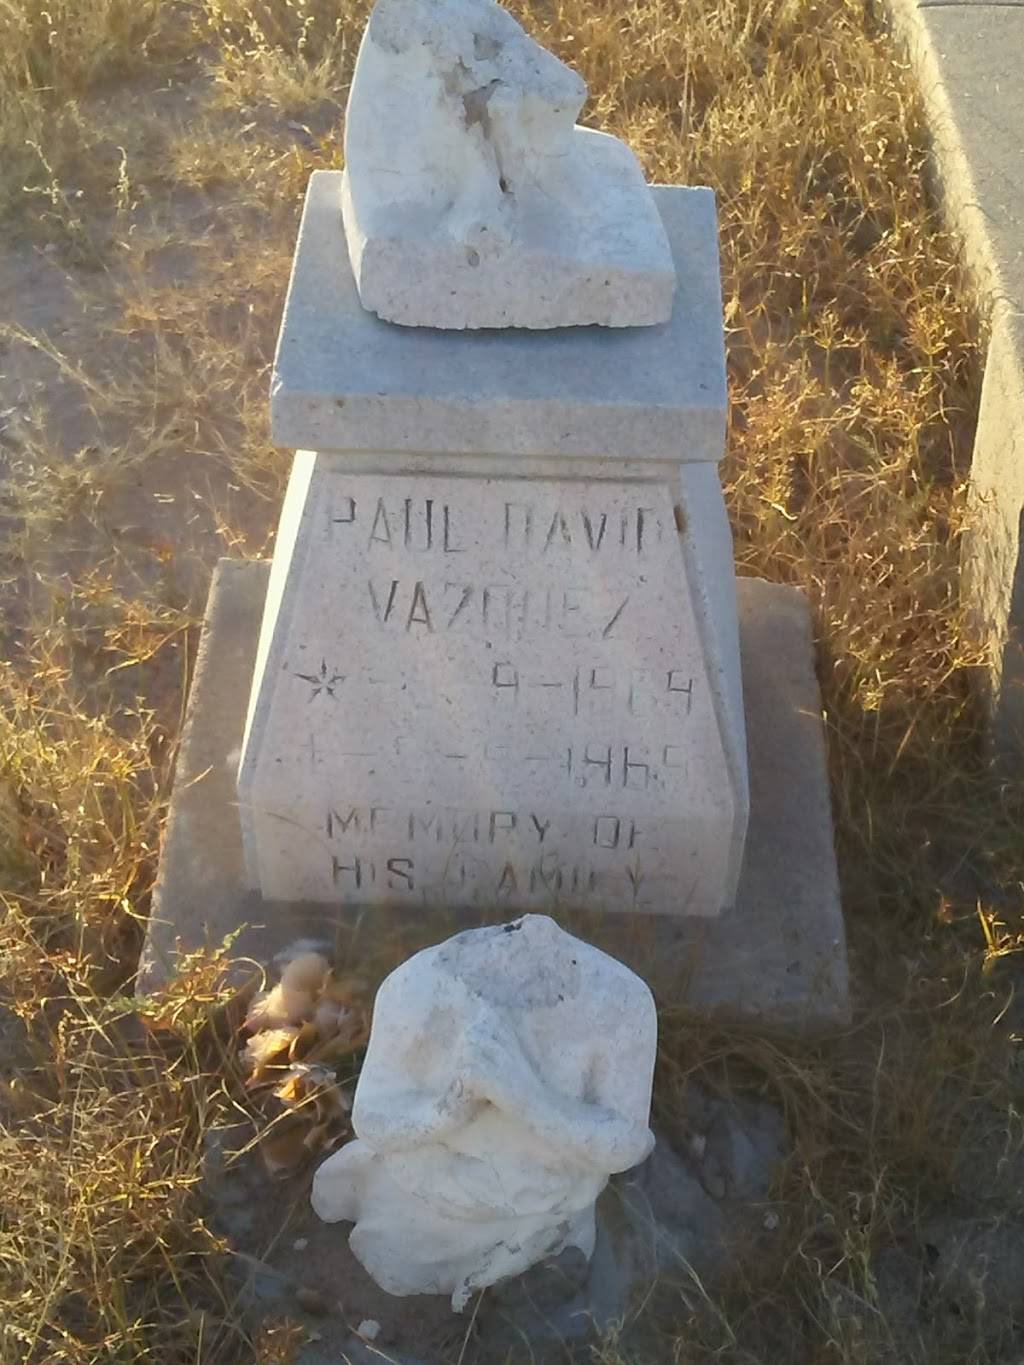 Concordia Cemetery | 3700 Yandell Dr, El Paso, TX 79903 | Phone: (915) 842-8200